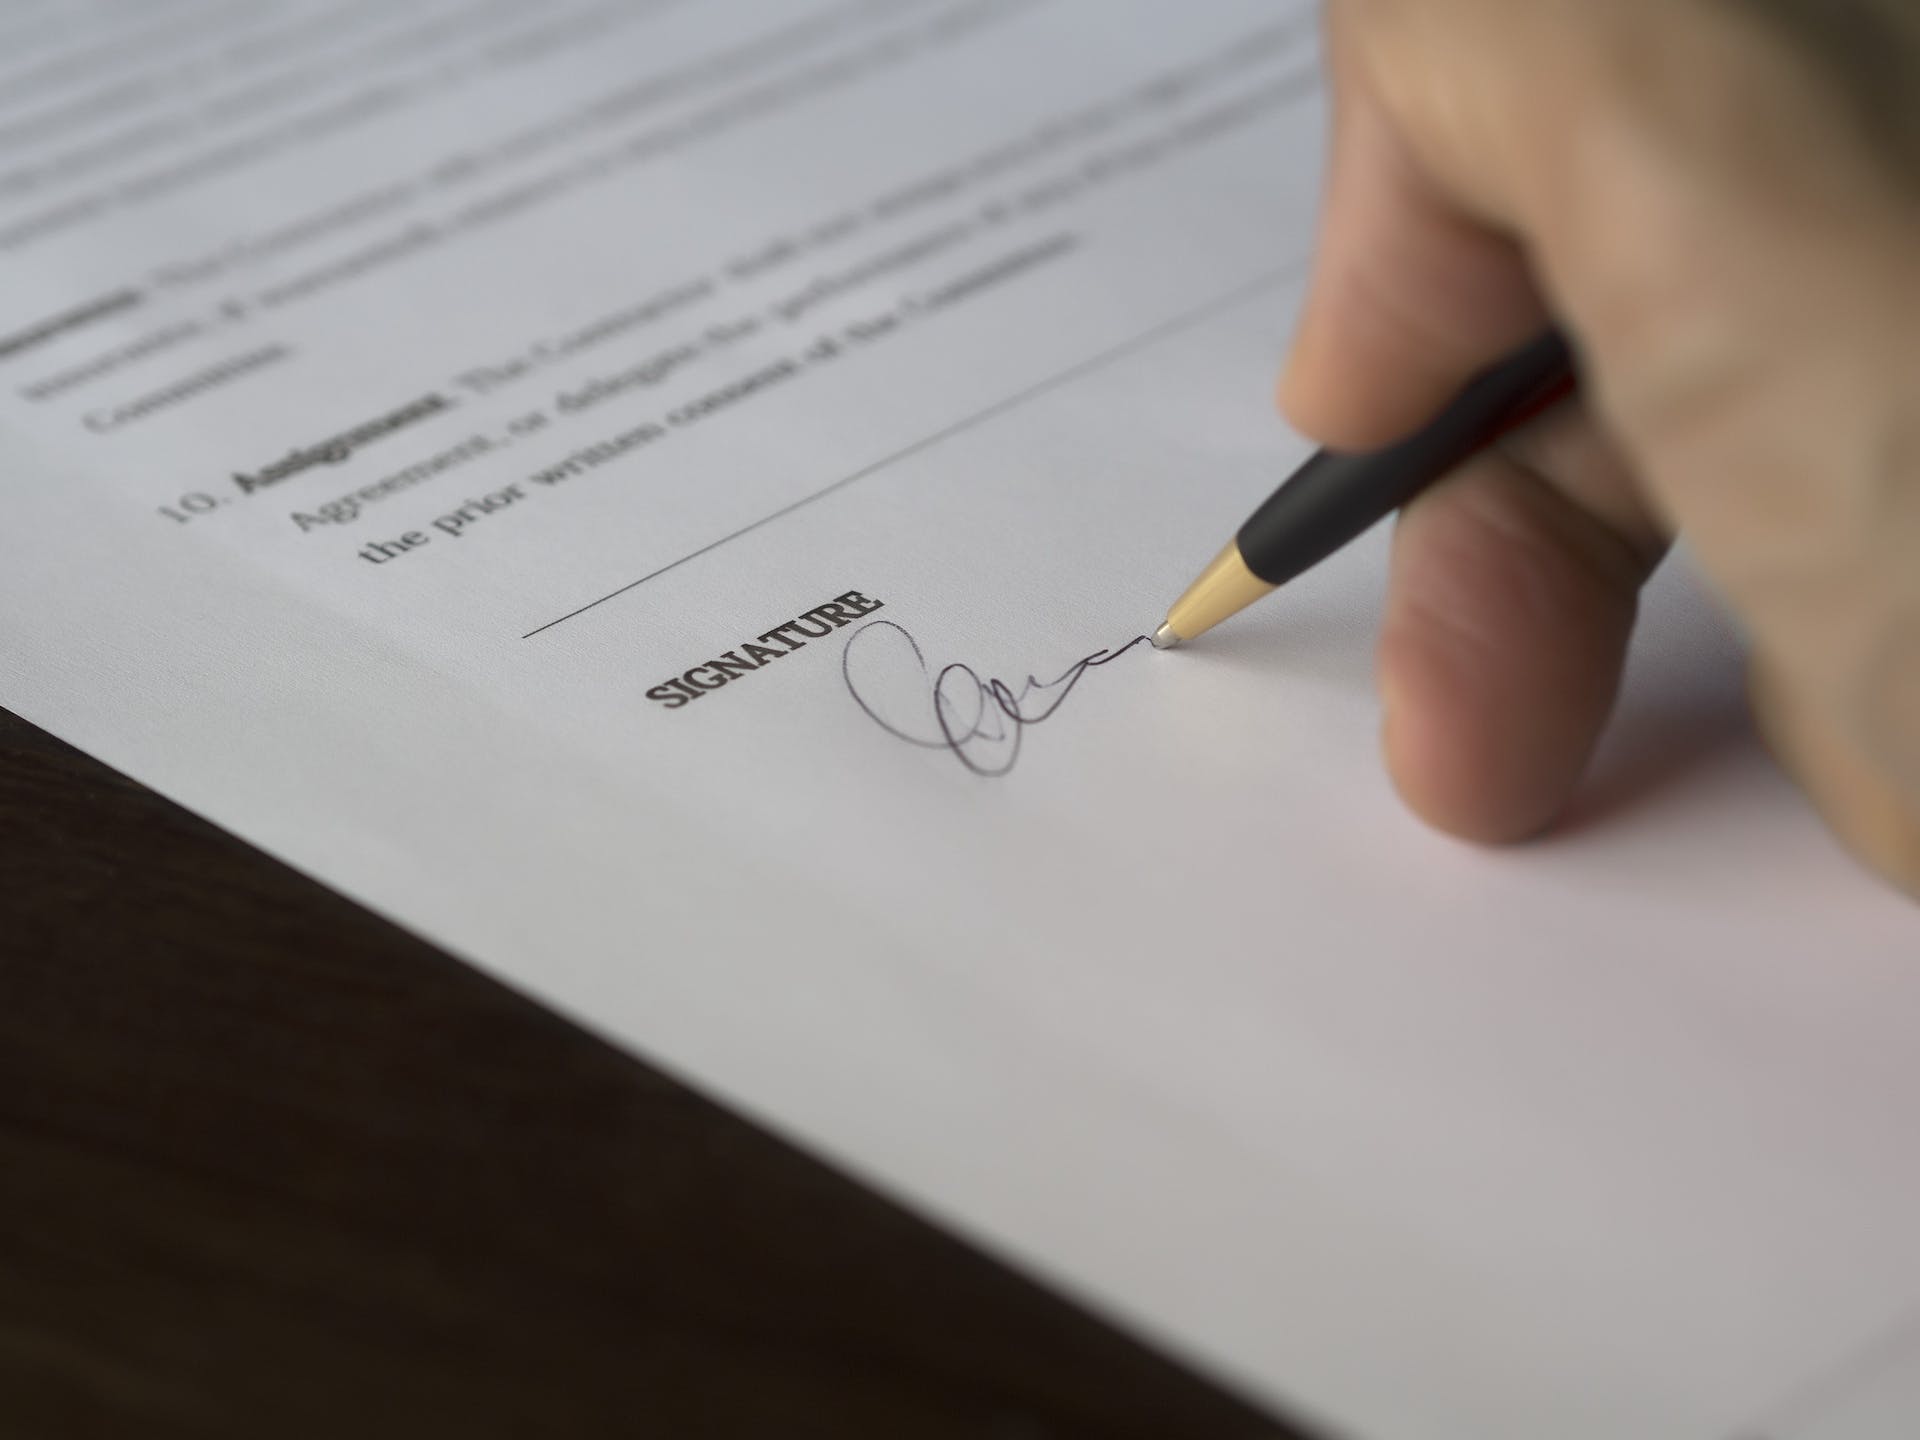 Personne signant des documents administratifs | Source : Pexels